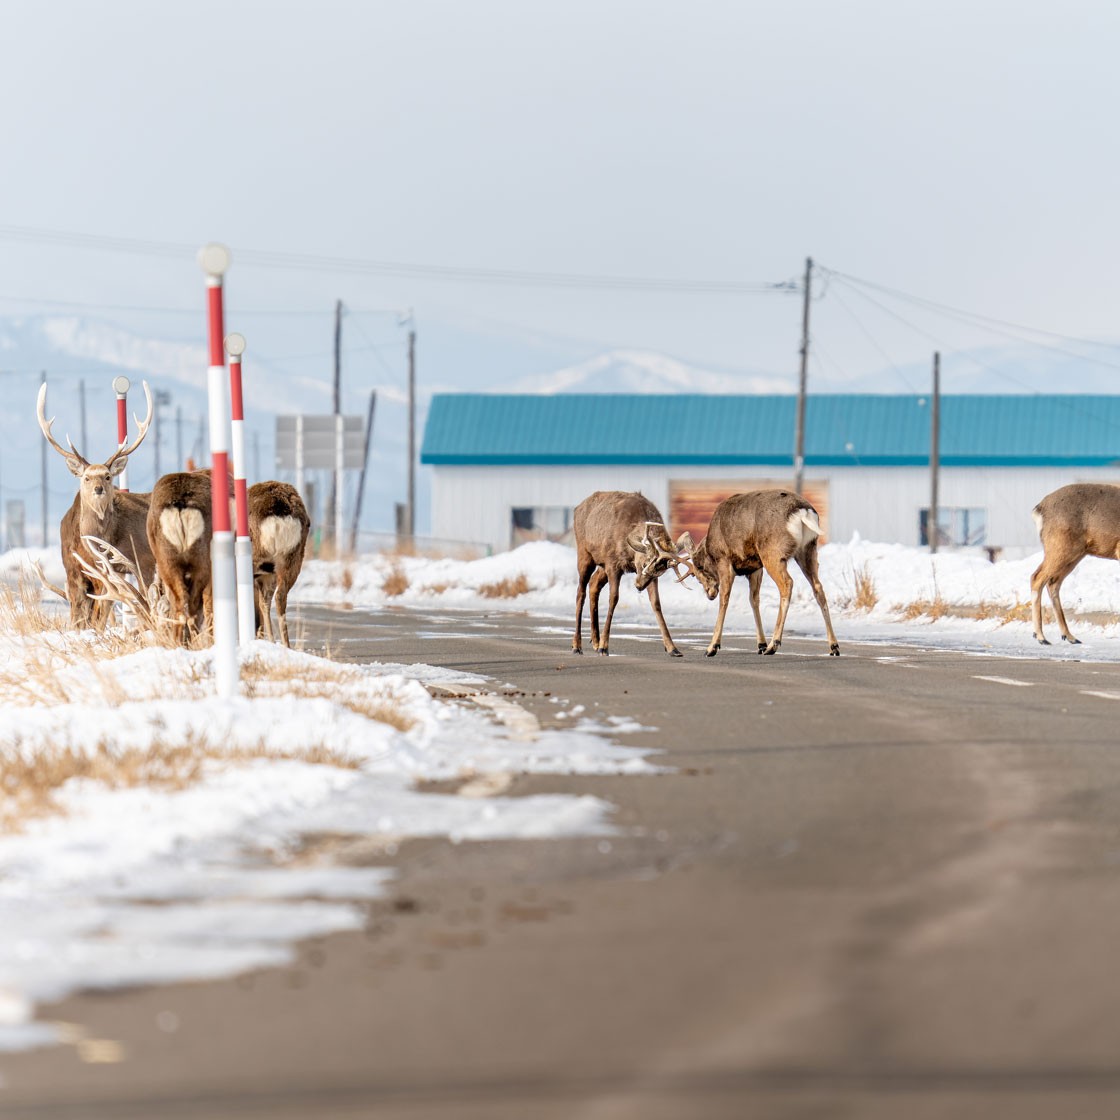 Deer in the headlights pose traffic danger in Hokkaido